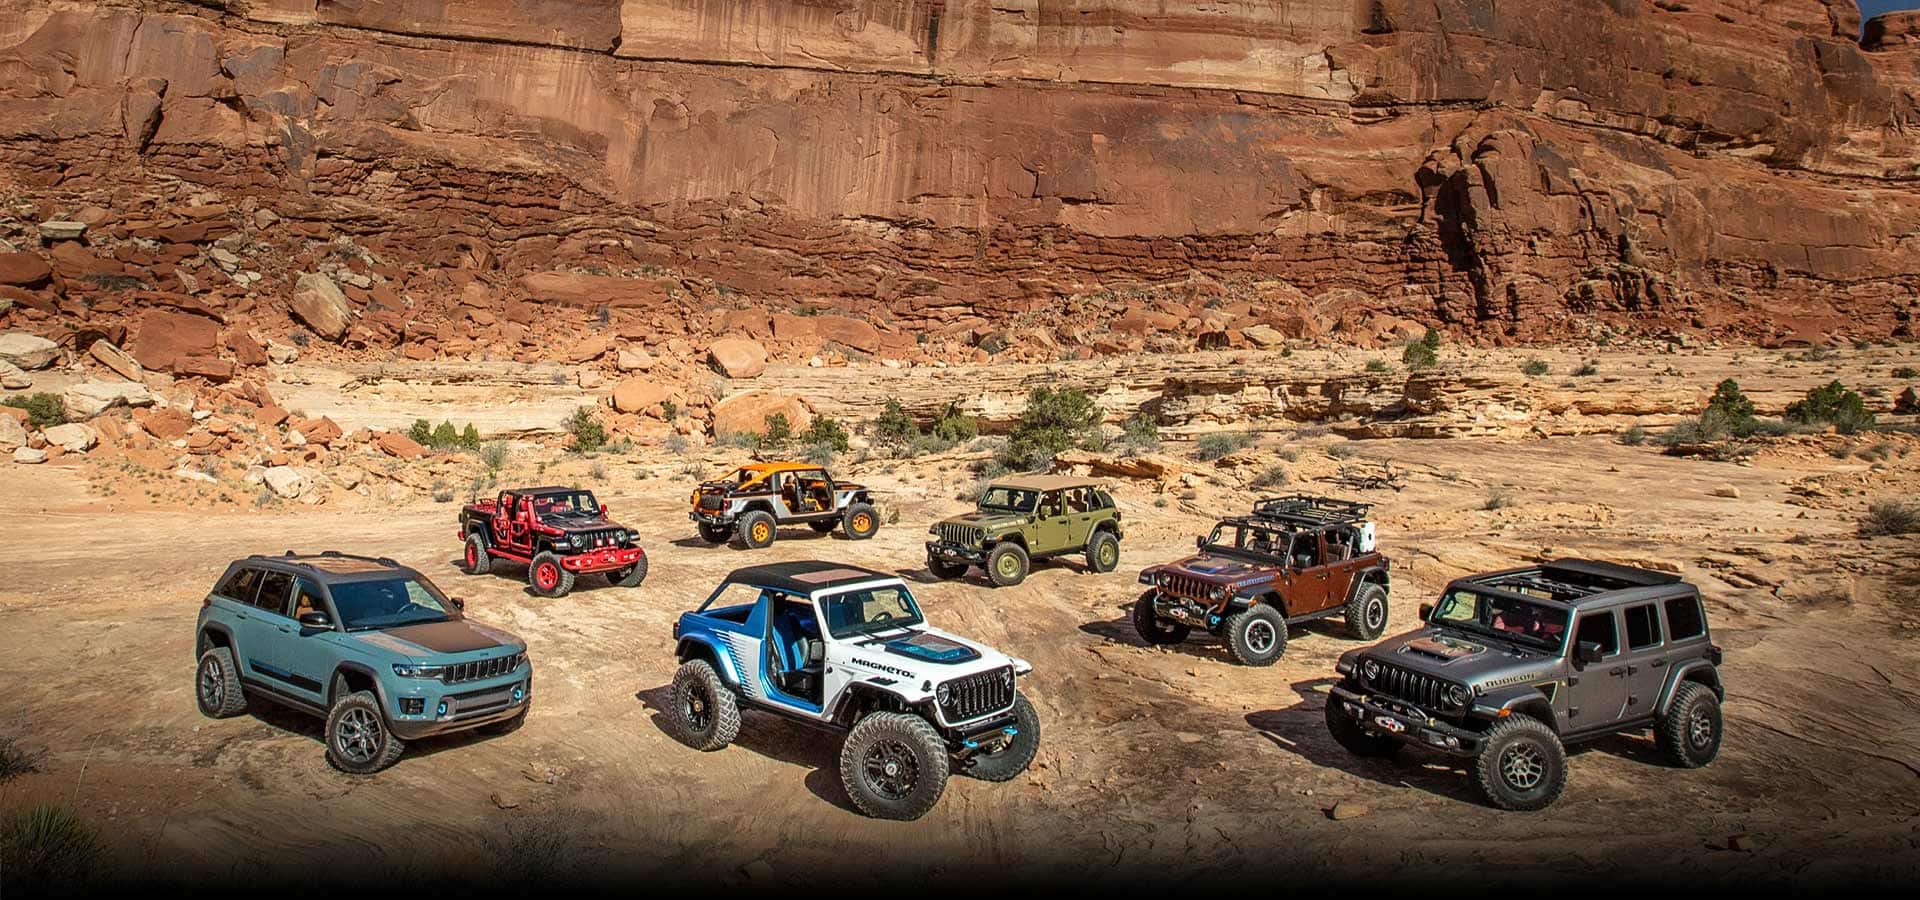 Siete vehículos conceptuales marca Jeep estacionados en una planicie arenosa, con un acantilado de roca roja erigido detrás de ellos.